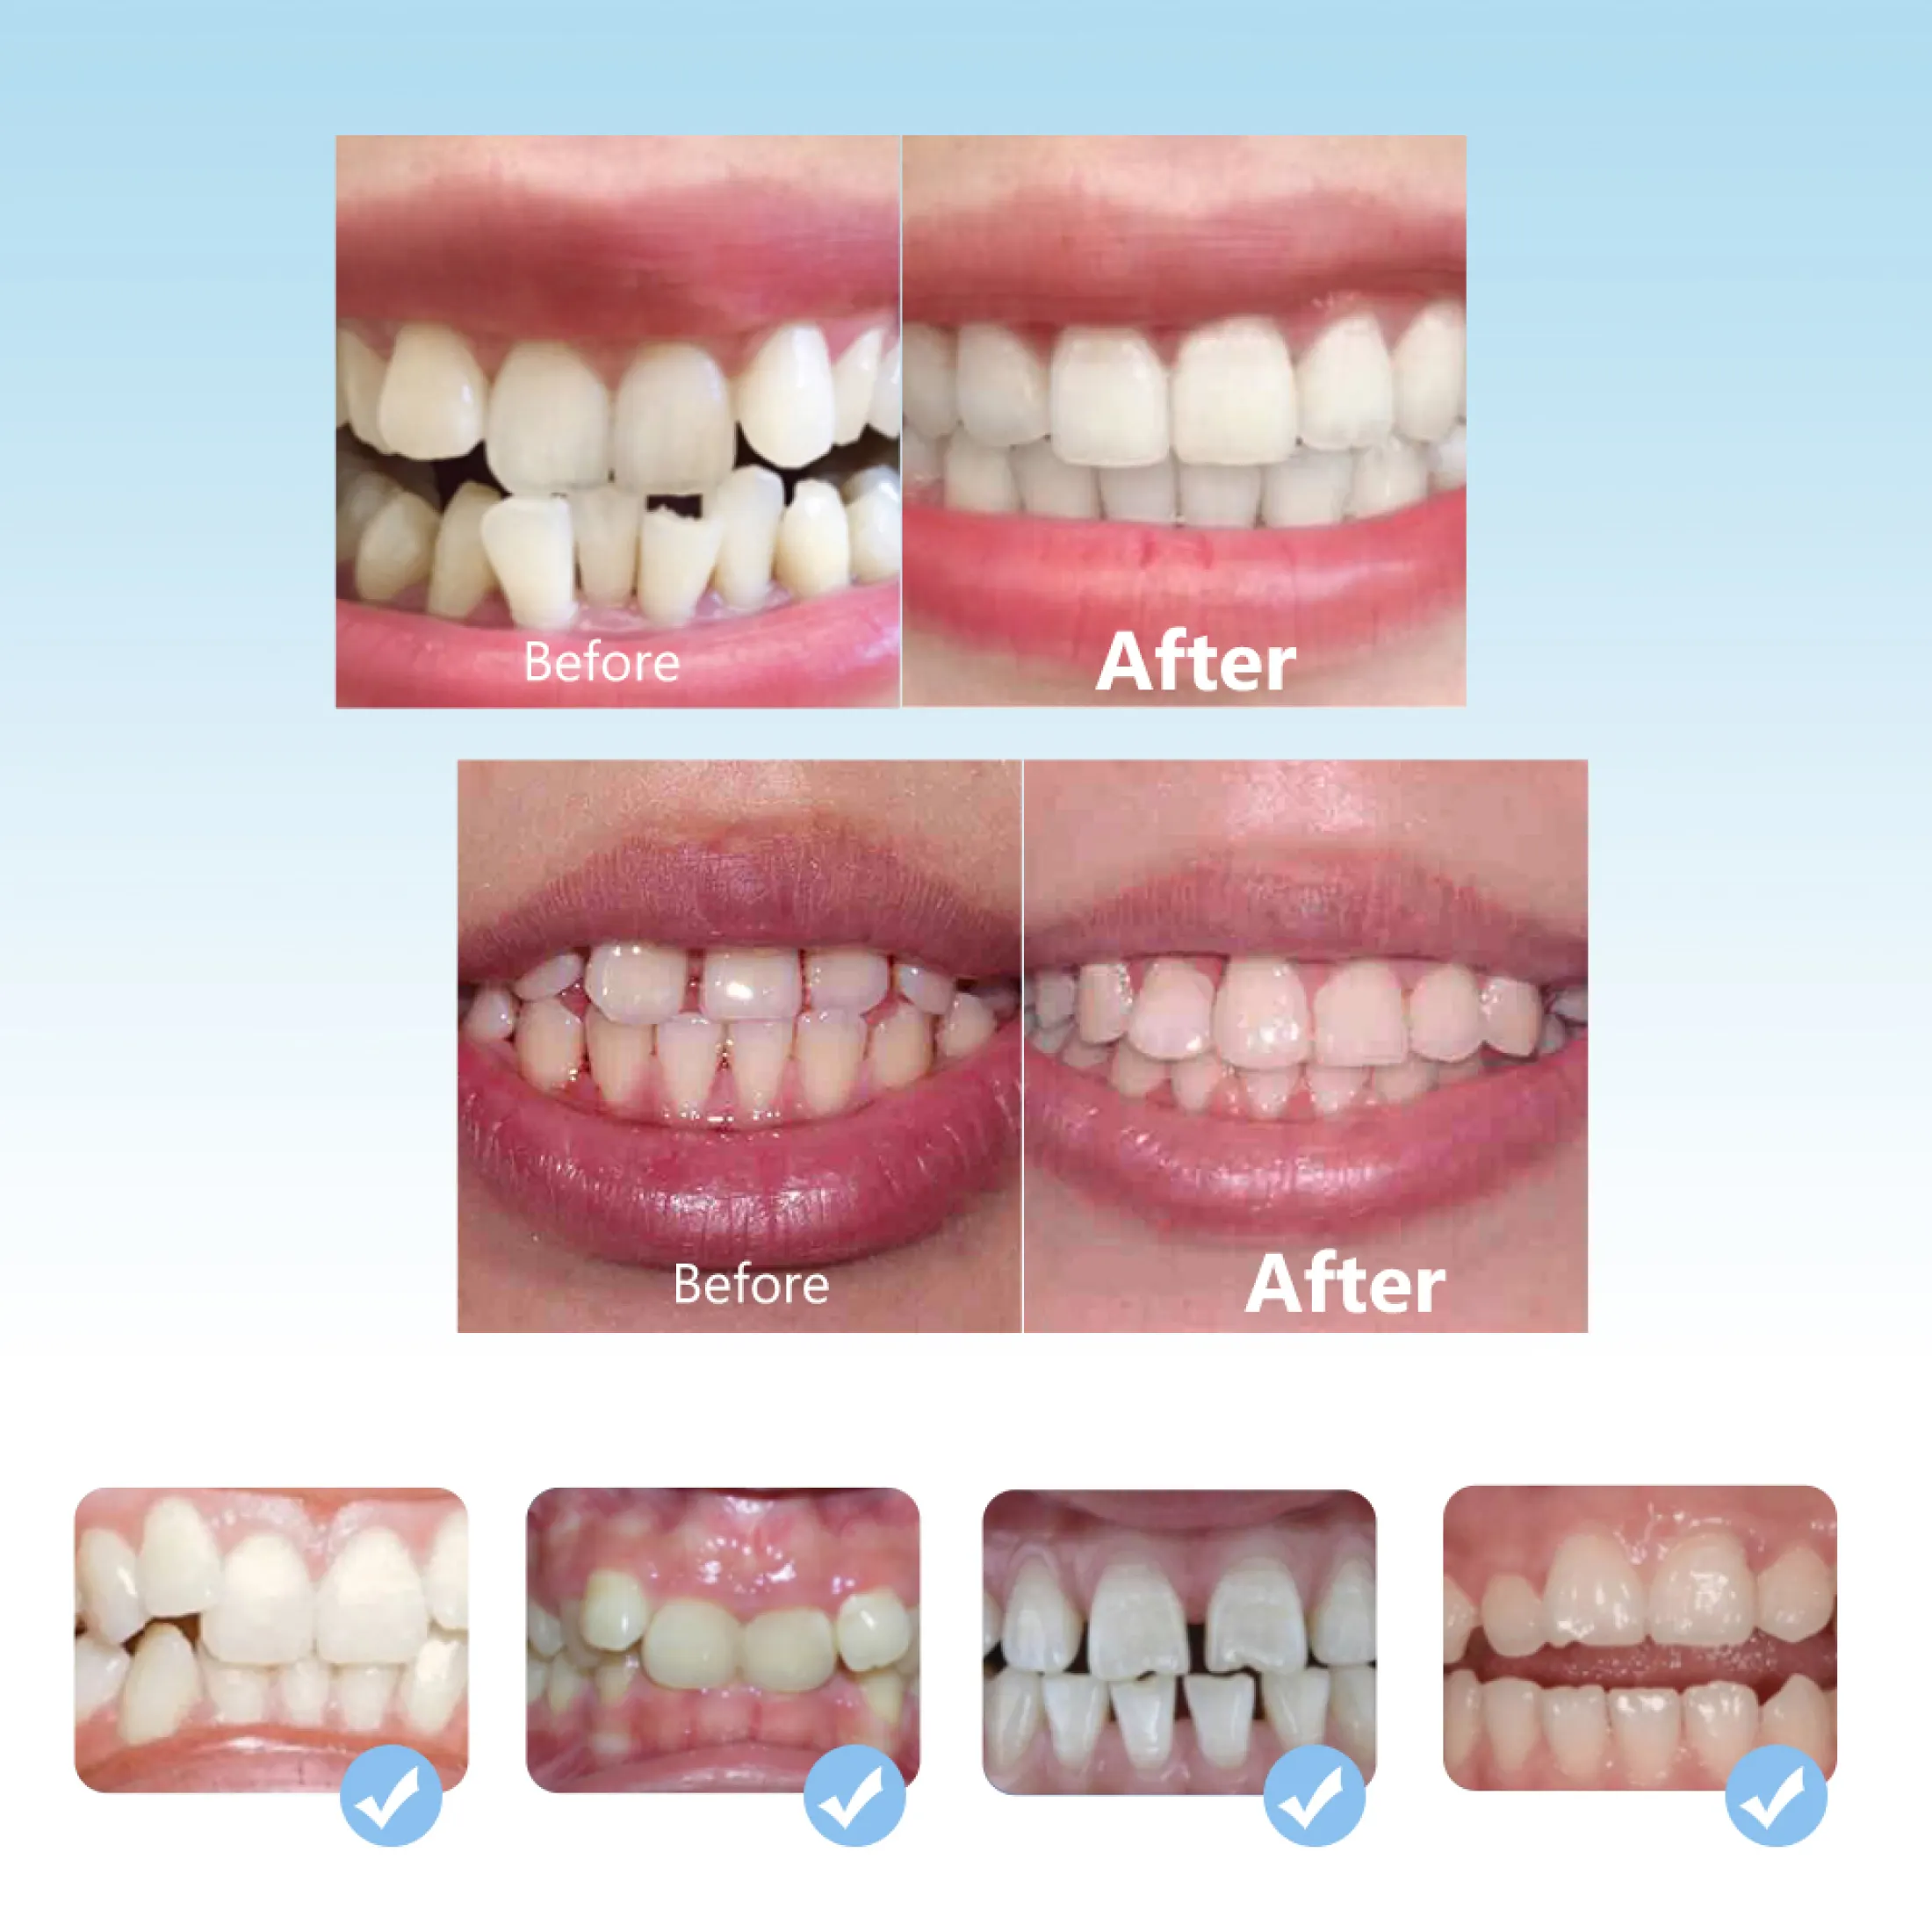 hailicare bộ niềng răng chỉnh nha nha khoa dụng cụ chỉnh răng bằng silicon 3 giai đoạn dụng cụ giữ răng dụng cụ giữ răng dụng cụ chỉnh răng dụng cụ duỗi răng cho trẻ em 8